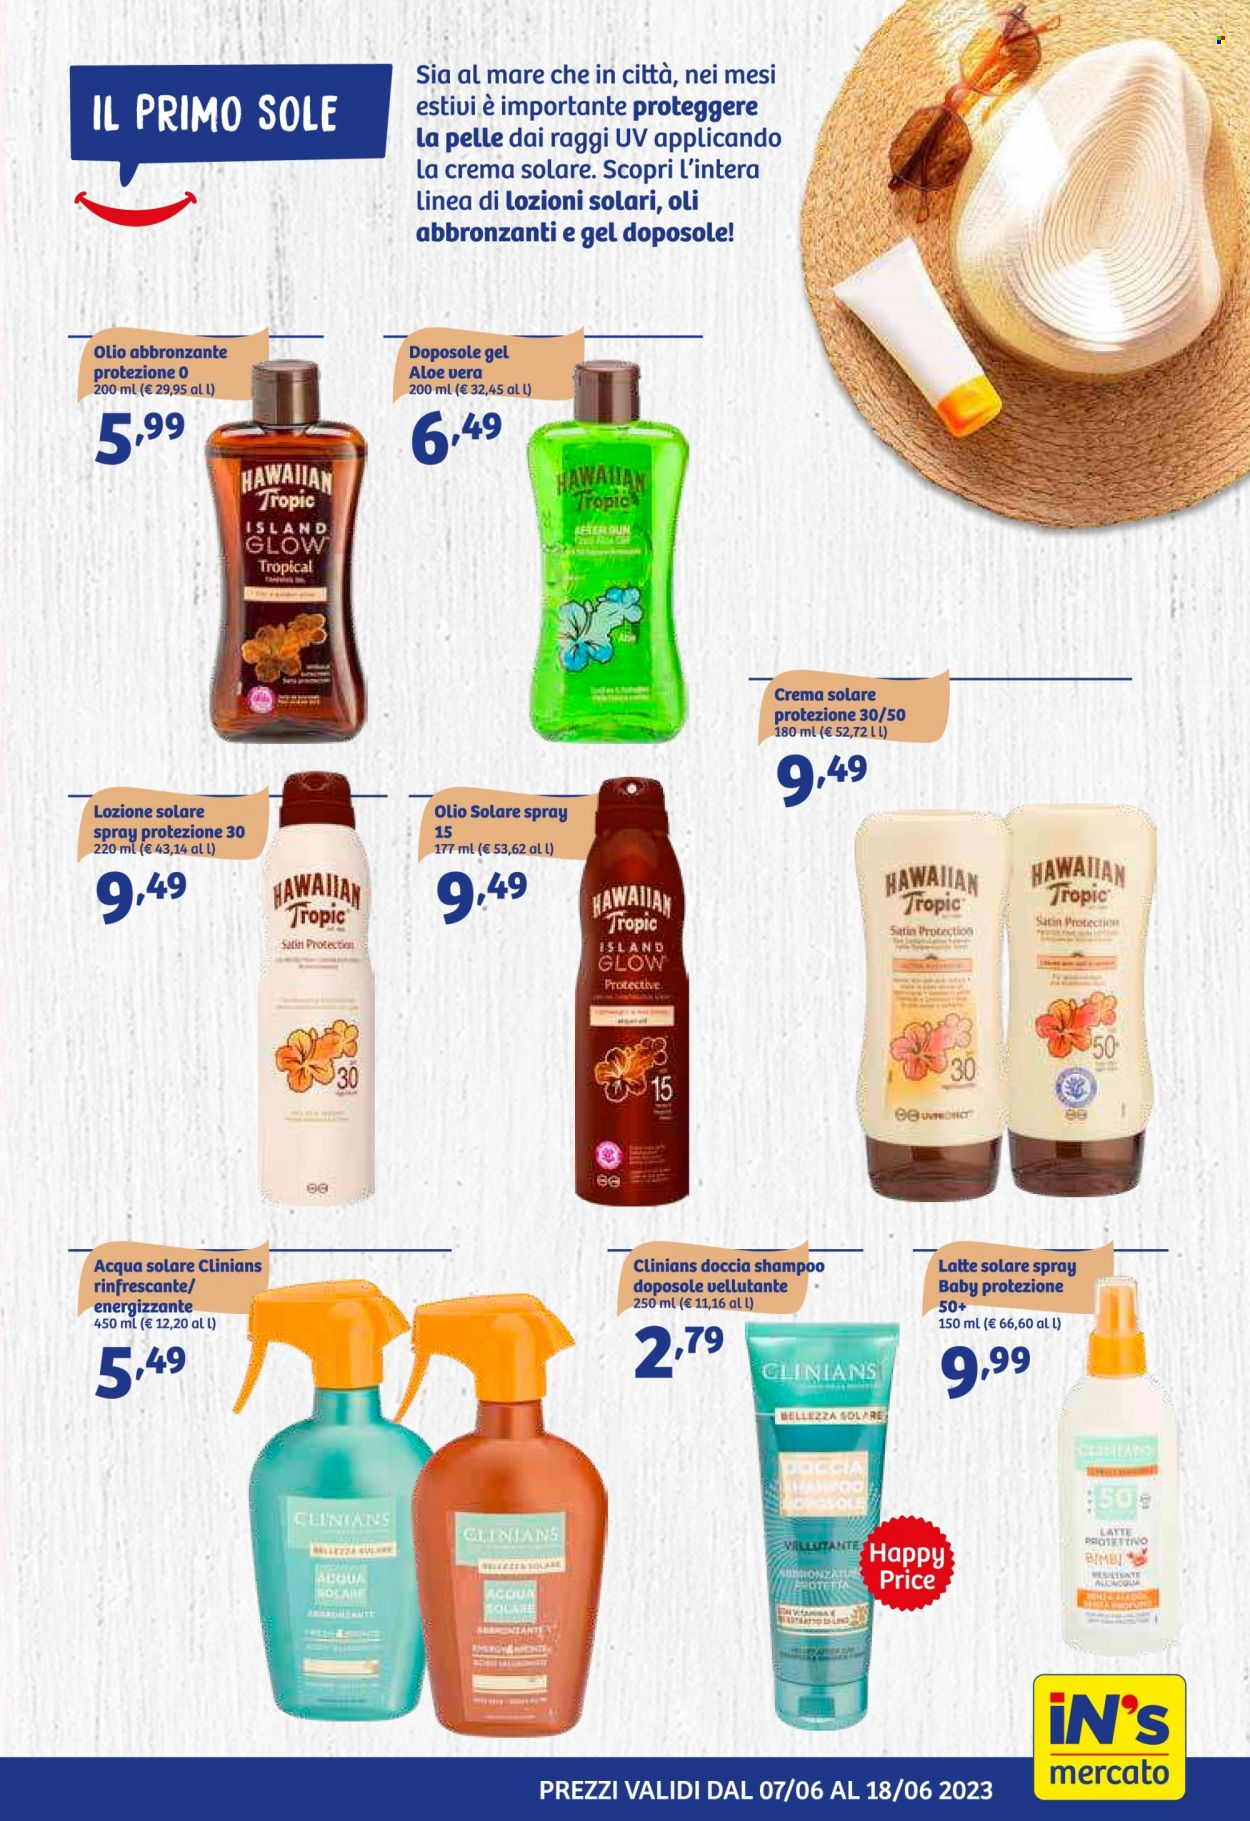 thumbnail - Volantino iN's Mercato - 7/6/2023 - 18/6/2023 - Prodotti in offerta - olio, docciashampoo, Clinians, crema solare, shampoo, latte solare, gel doposole. Pagina 11.